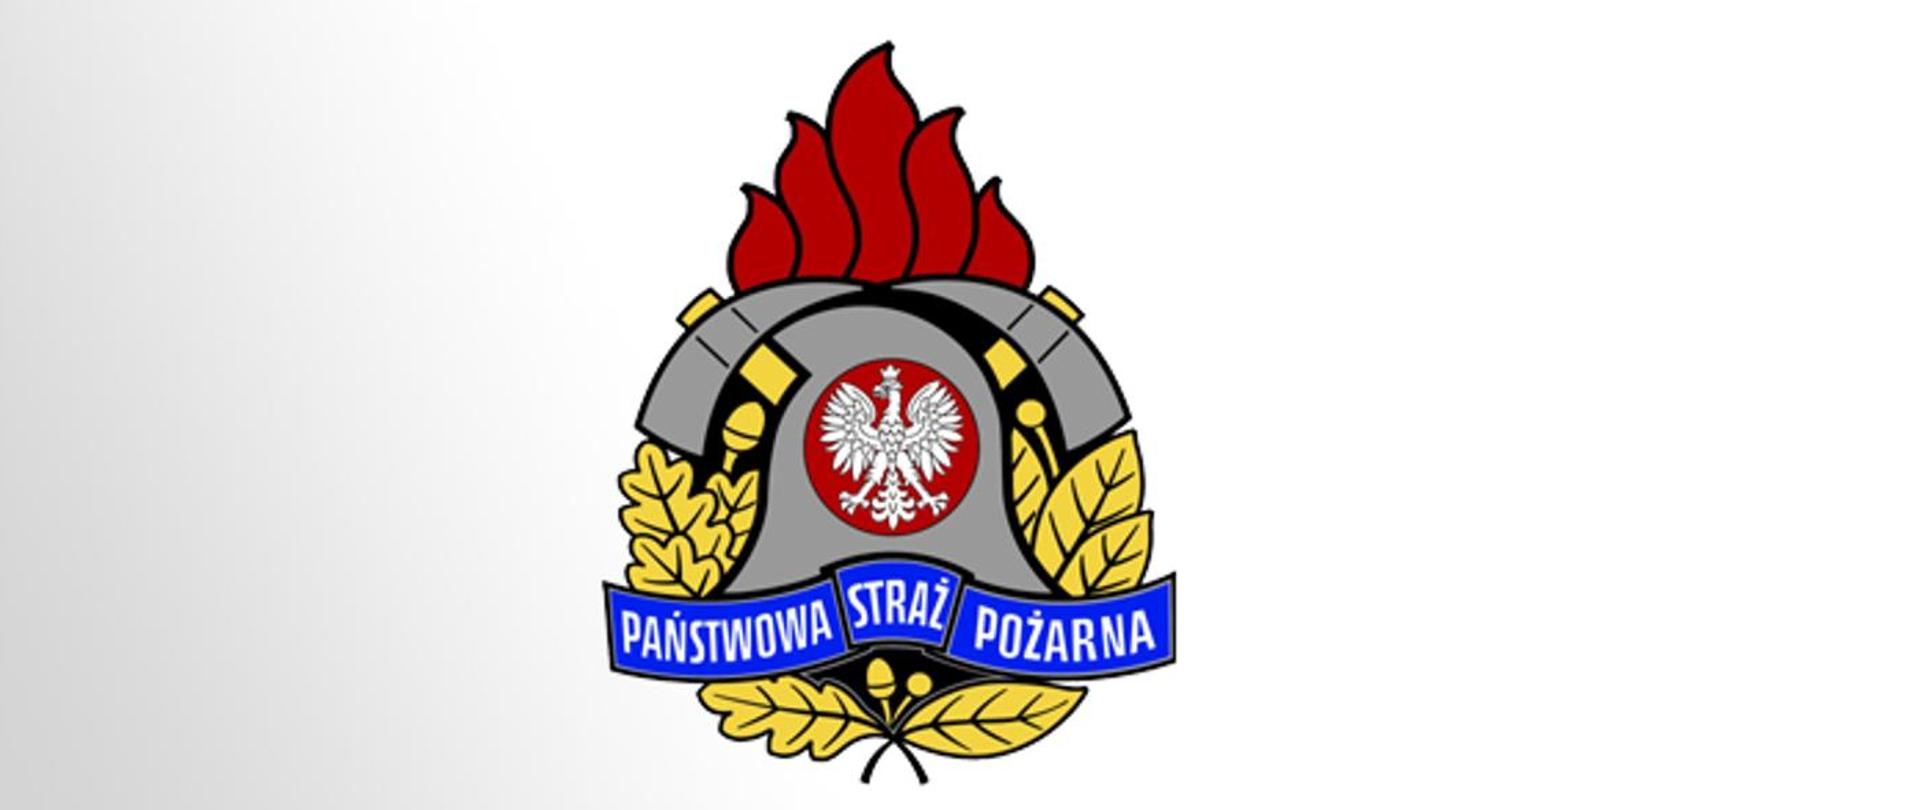 Zdjęcie przedstawia logo Państwowej Straży Pożarnej na białym tle.